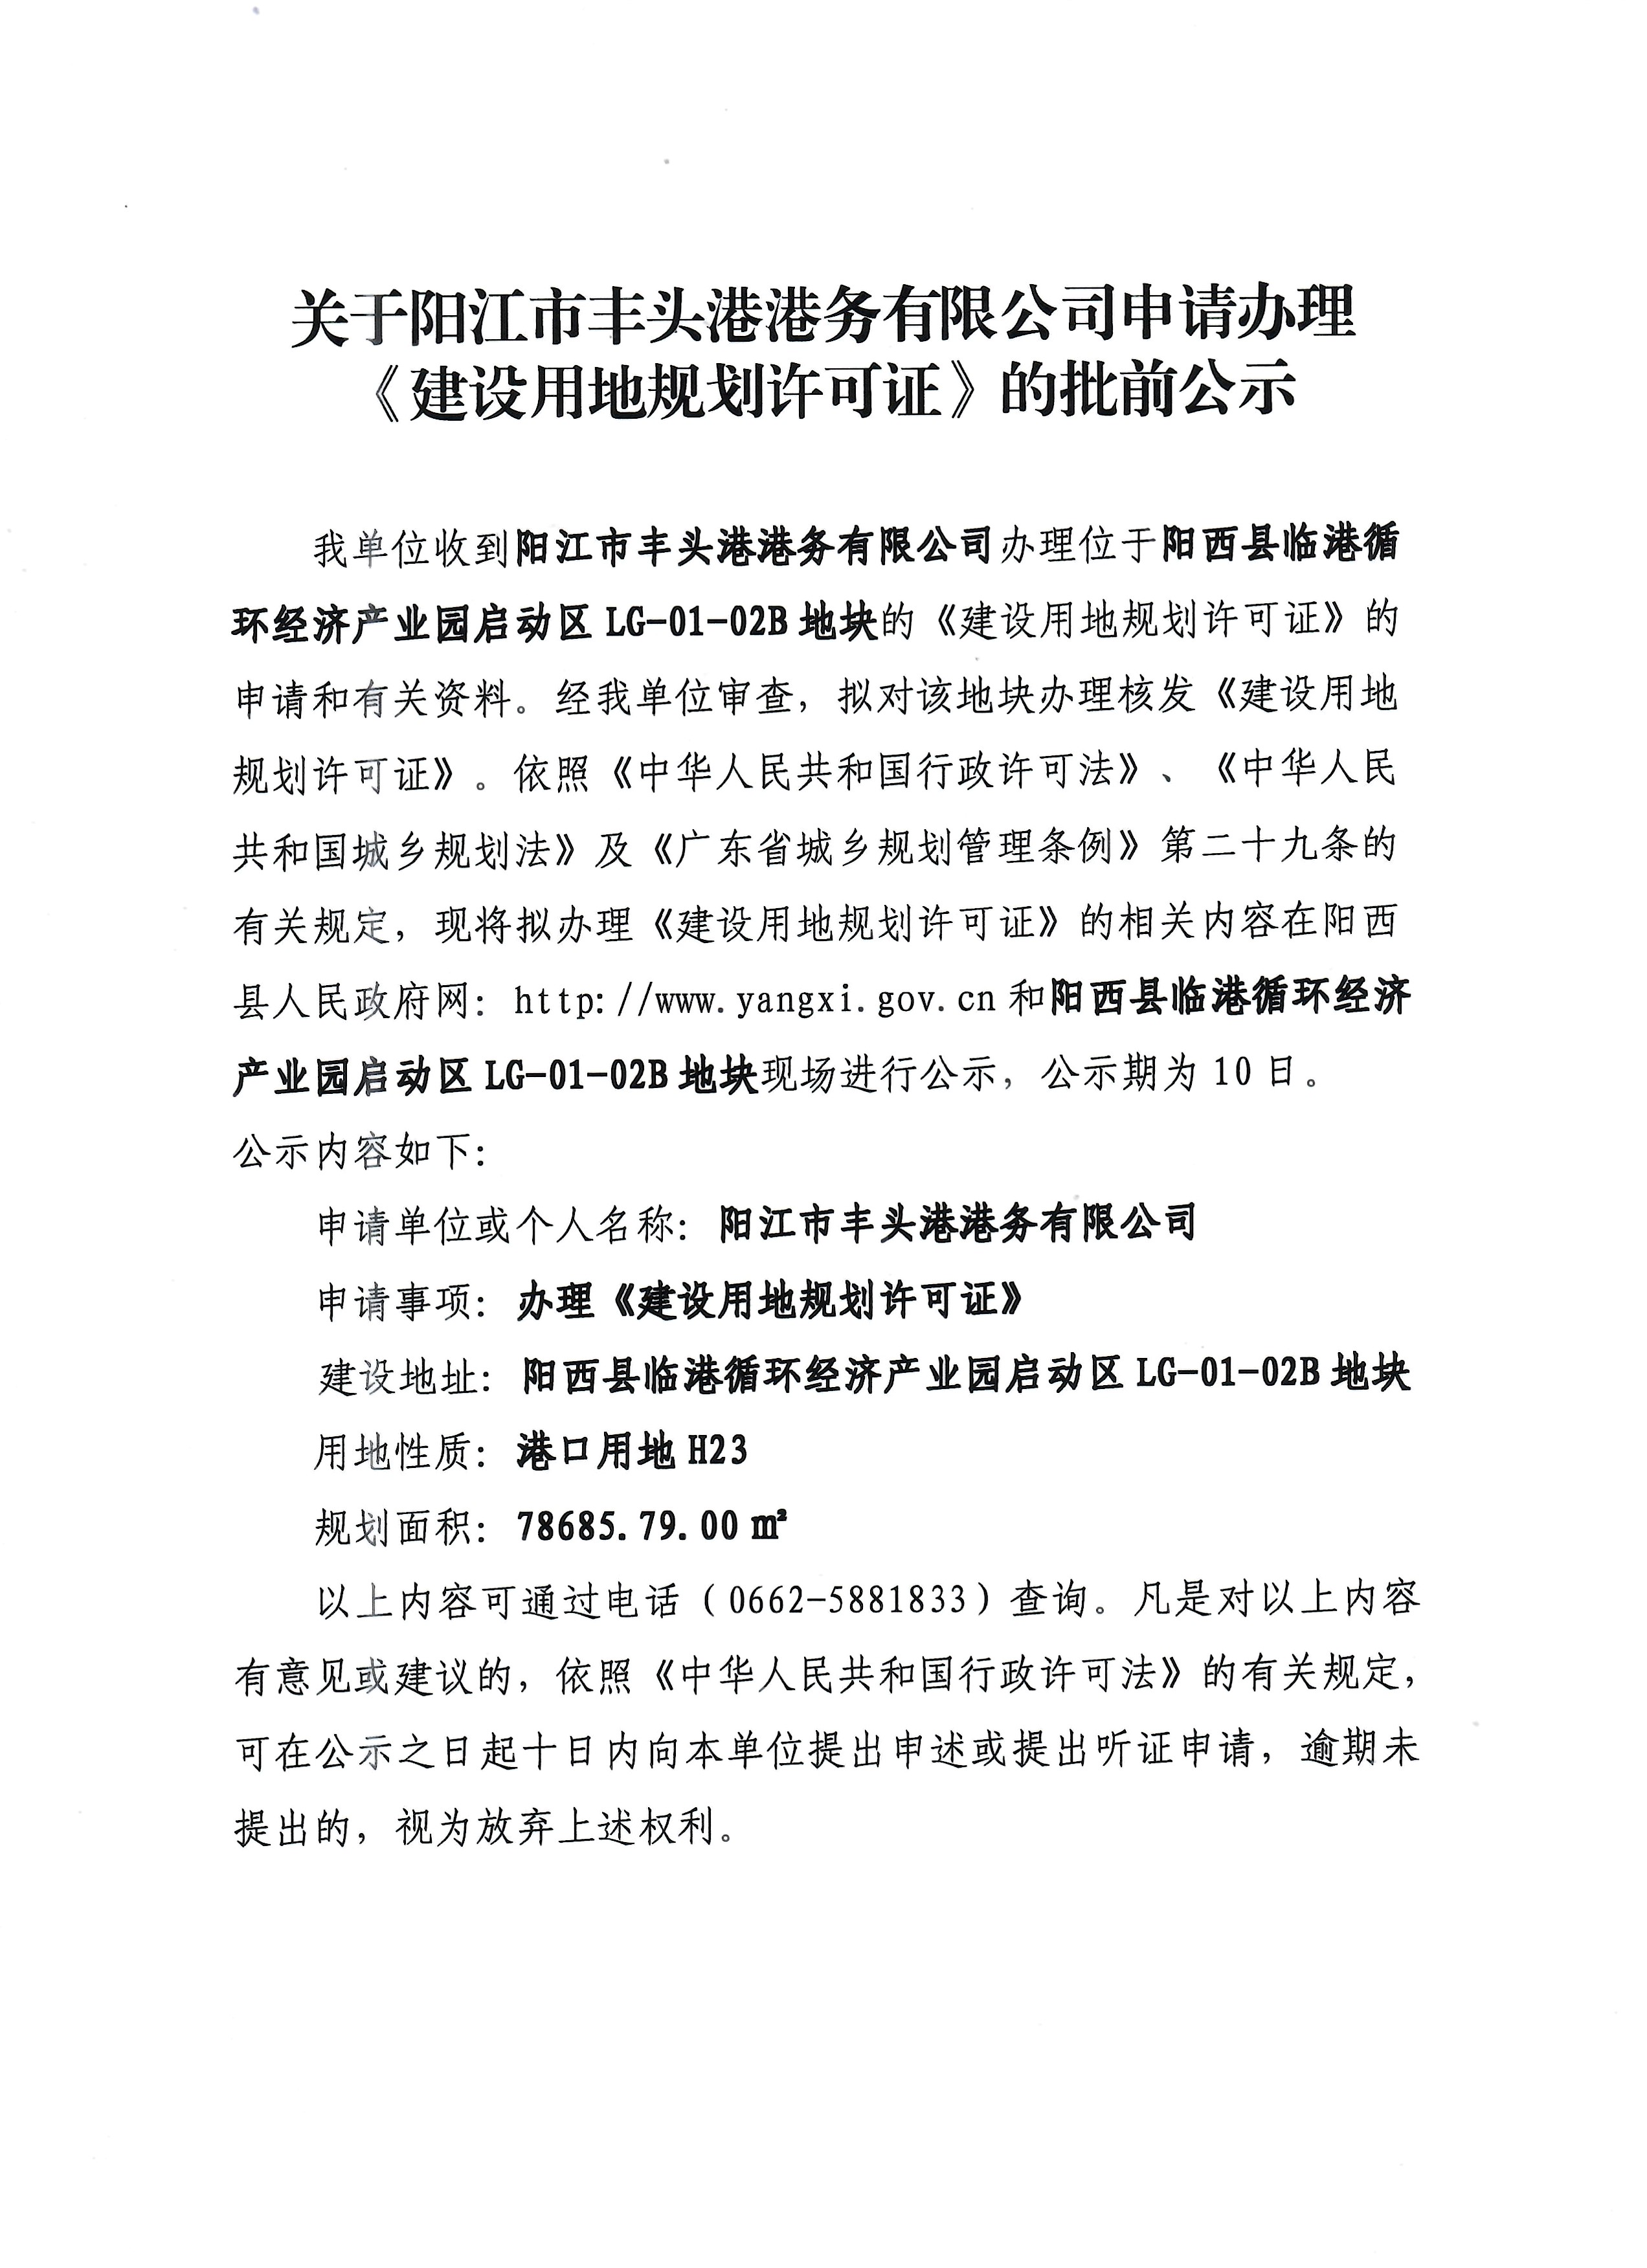 关于阳江市丰头港港务有限公司申请办理《建设用地规划许可证》的批前公示.jpg